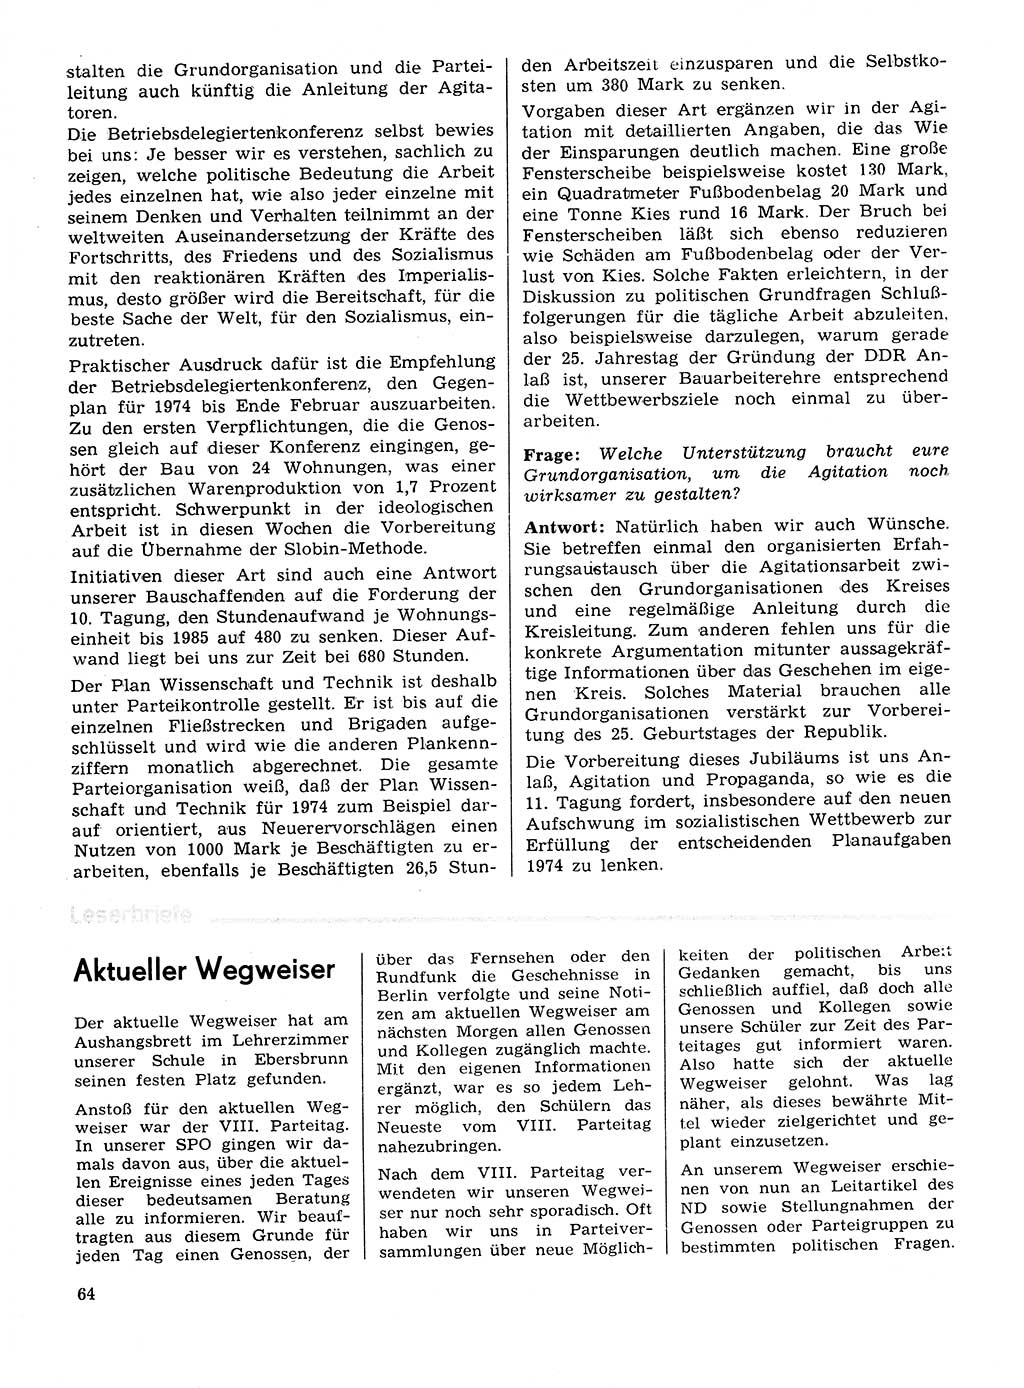 Neuer Weg (NW), Organ des Zentralkomitees (ZK) der SED (Sozialistische Einheitspartei Deutschlands) für Fragen des Parteilebens, 29. Jahrgang [Deutsche Demokratische Republik (DDR)] 1974, Seite 64 (NW ZK SED DDR 1974, S. 64)